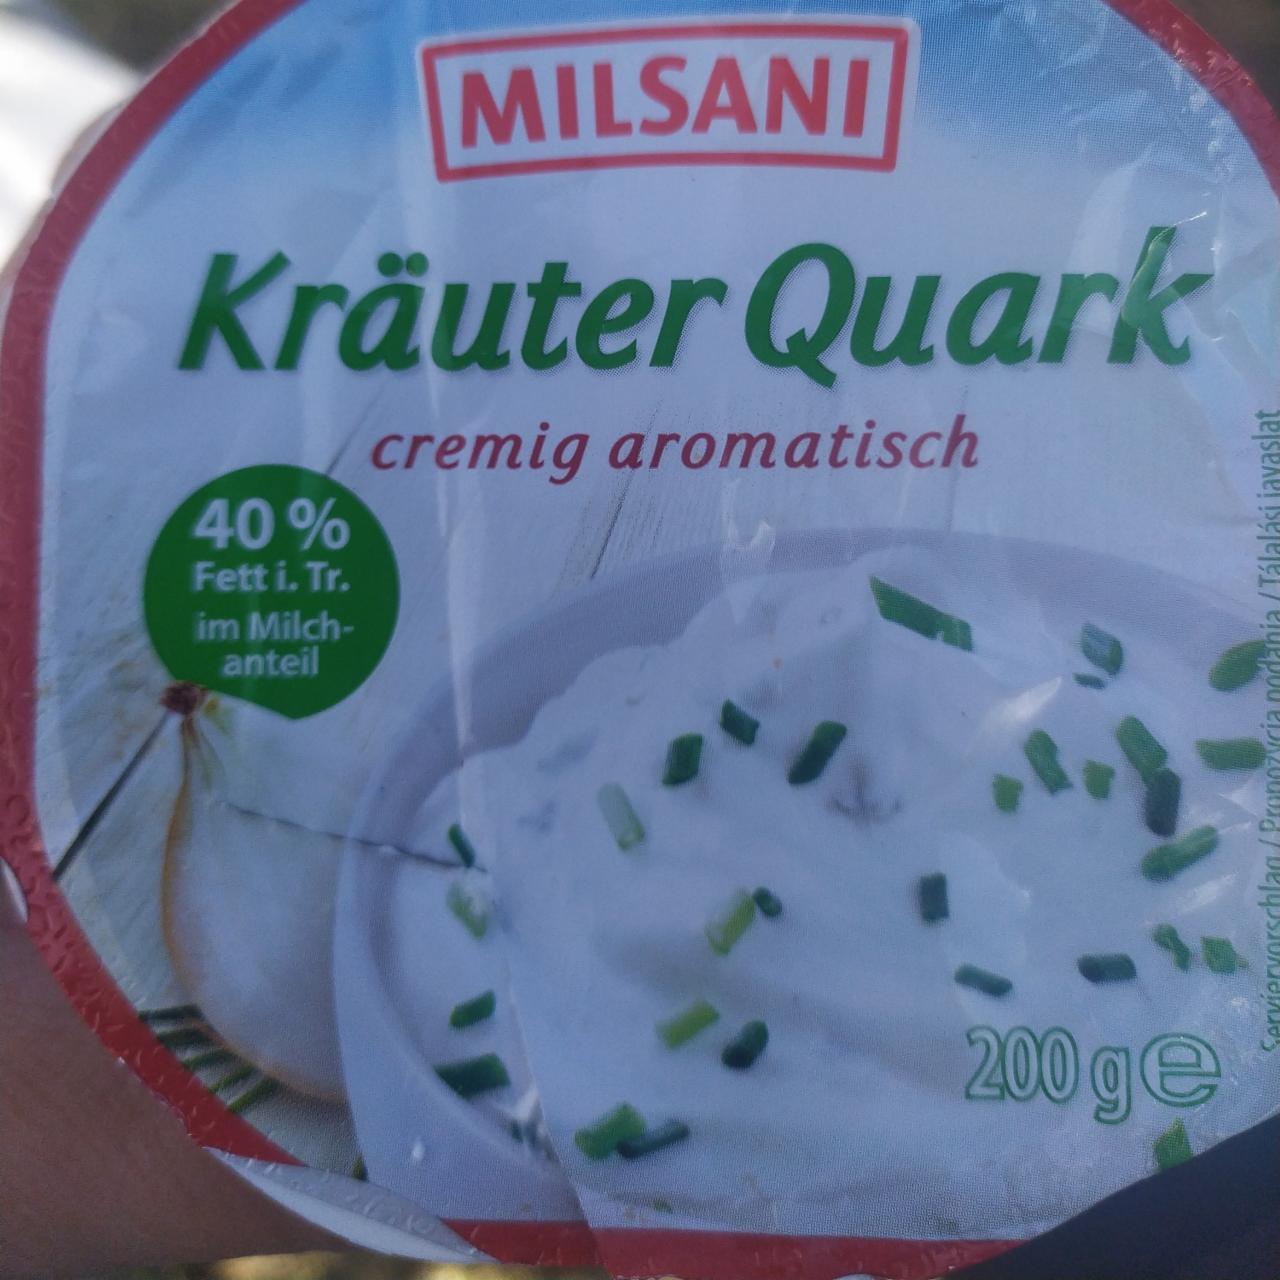 Zdjęcia - Kräuter Quark cremig aromatisch Milsani